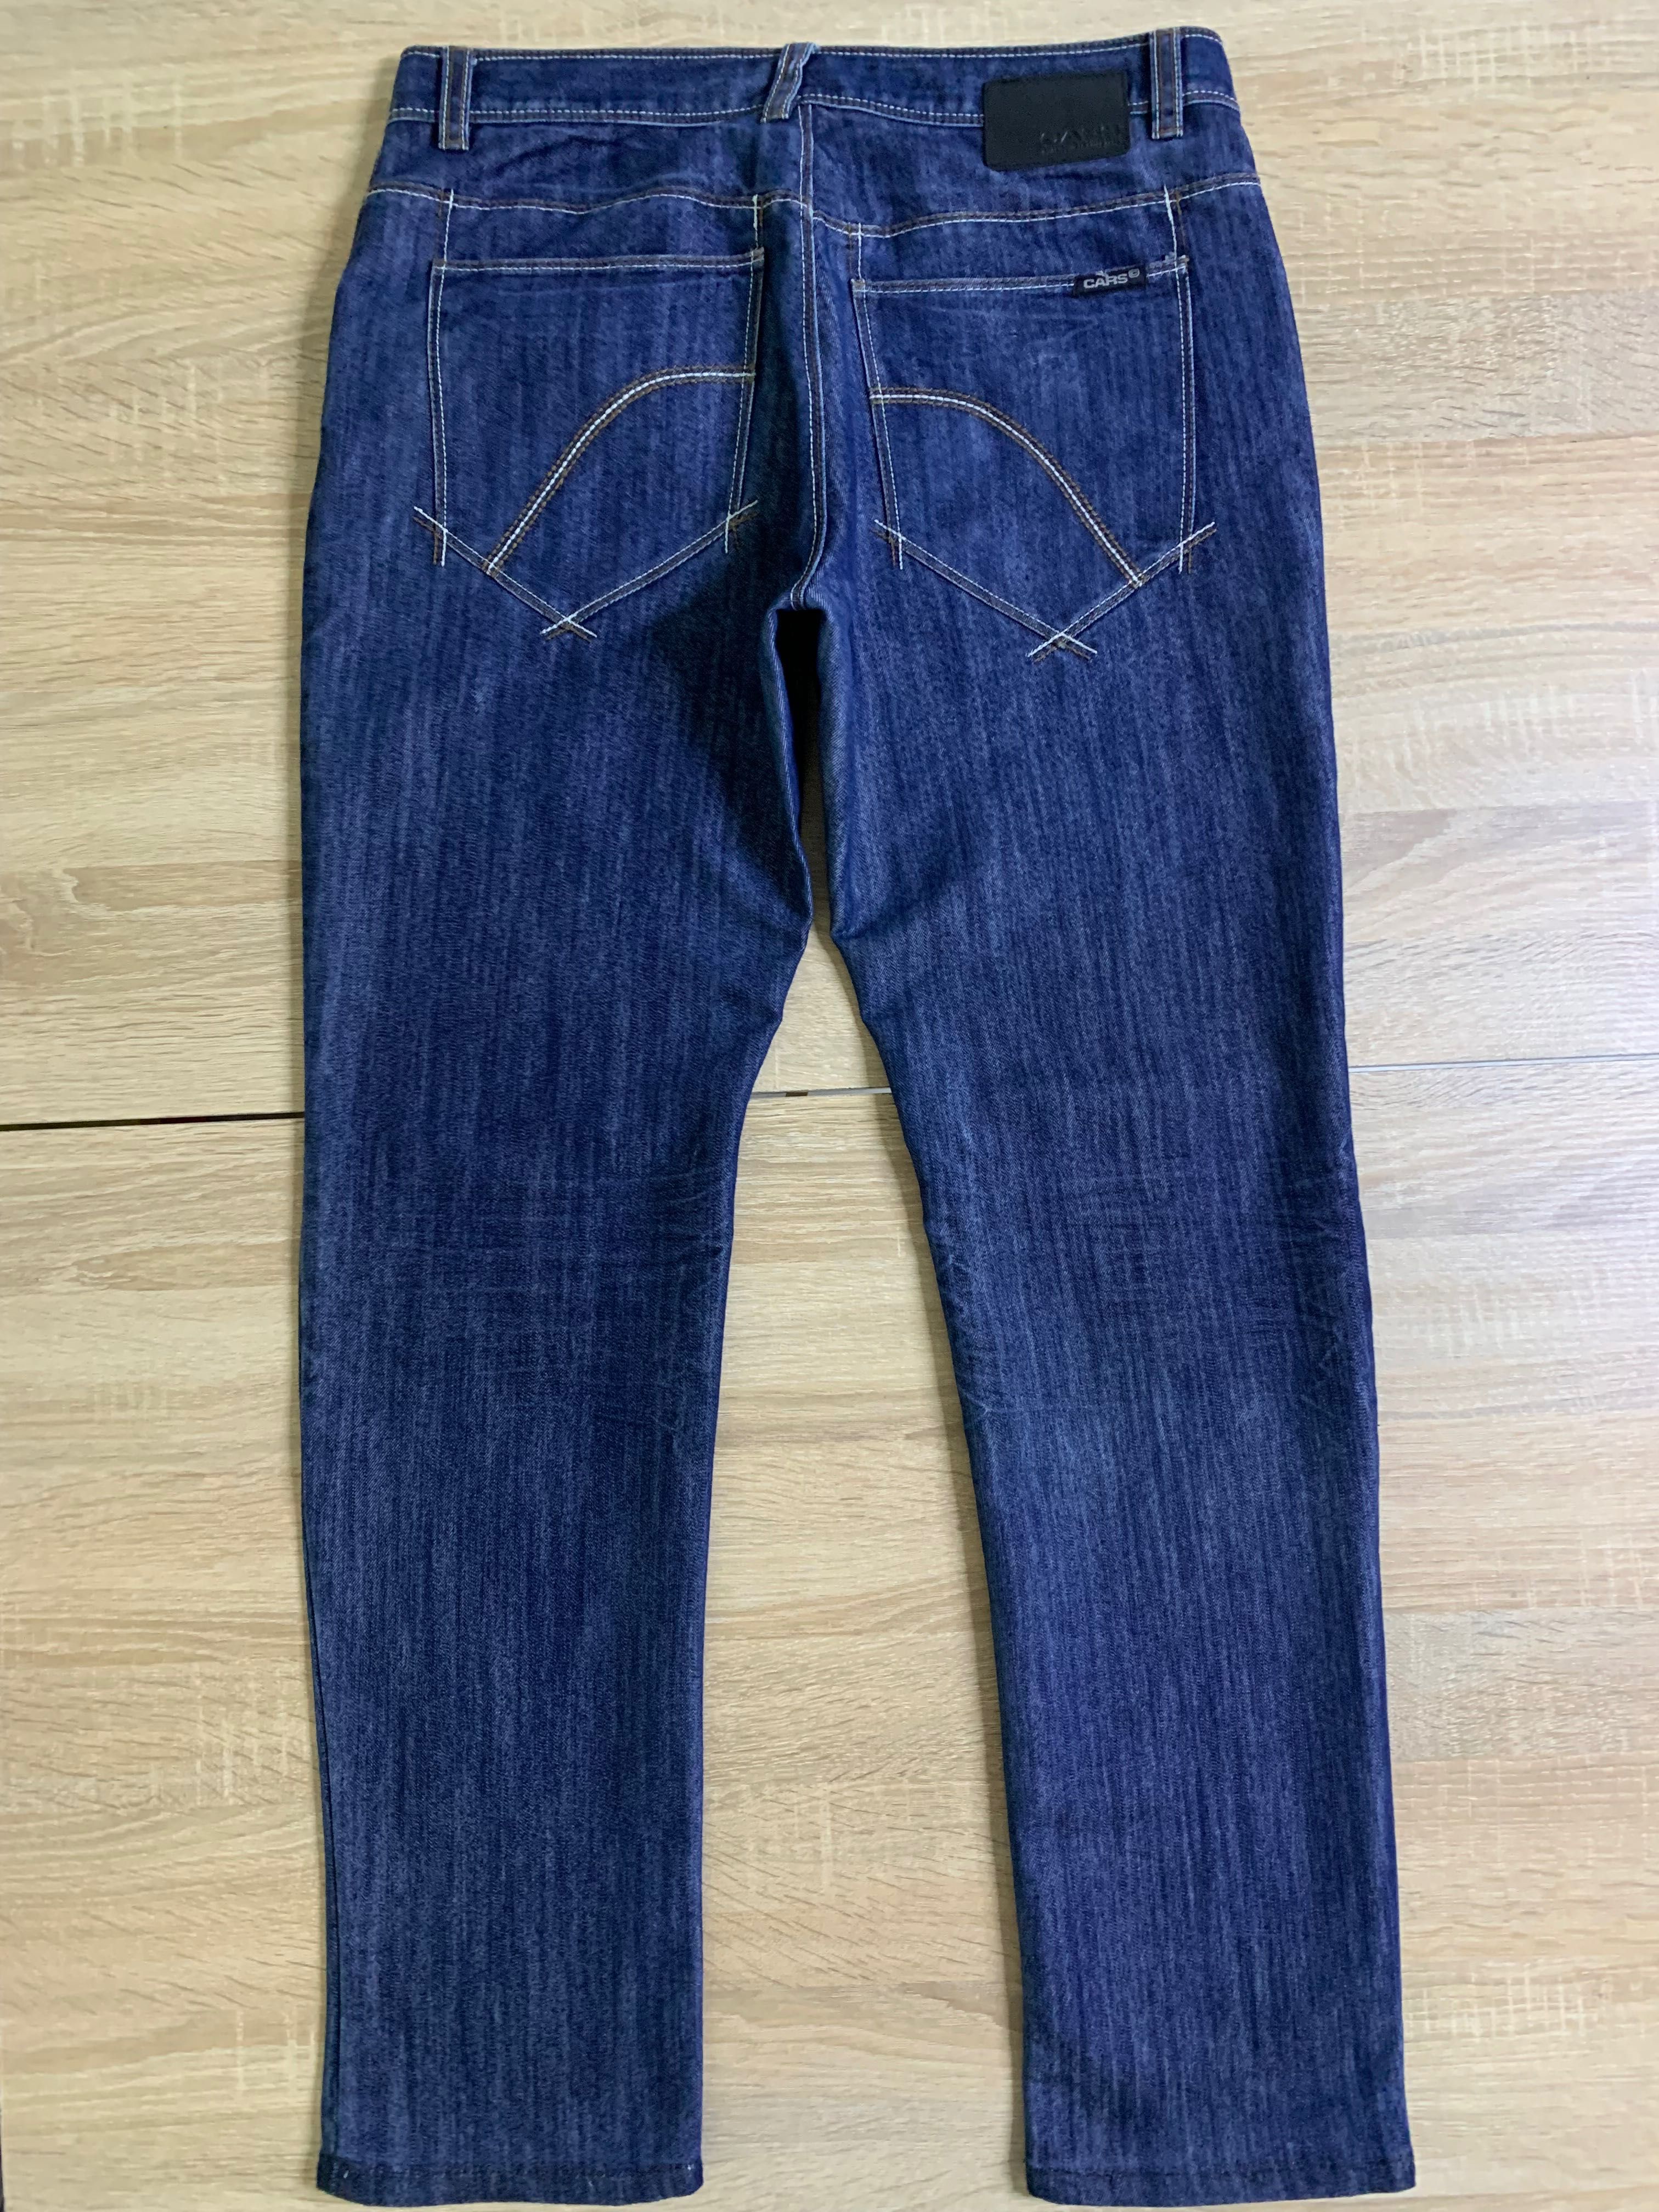 Чоловічі джинси Gars Jeans W 33 L 32